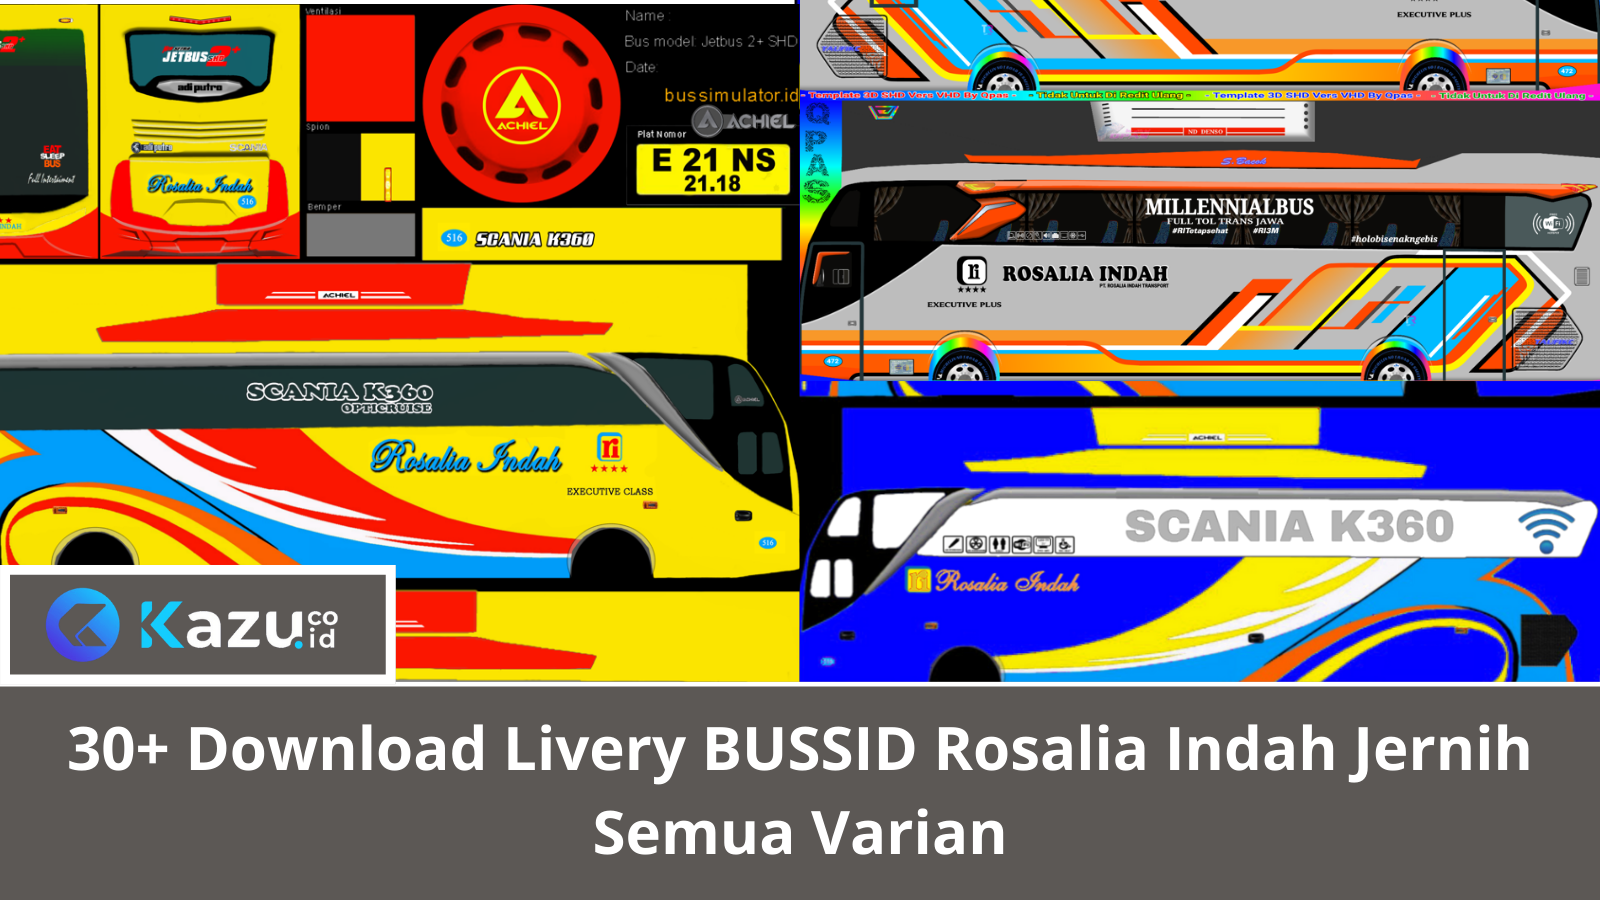 30+ Download Livery BUSSID Rosalia Indah Jernih Semua Varian